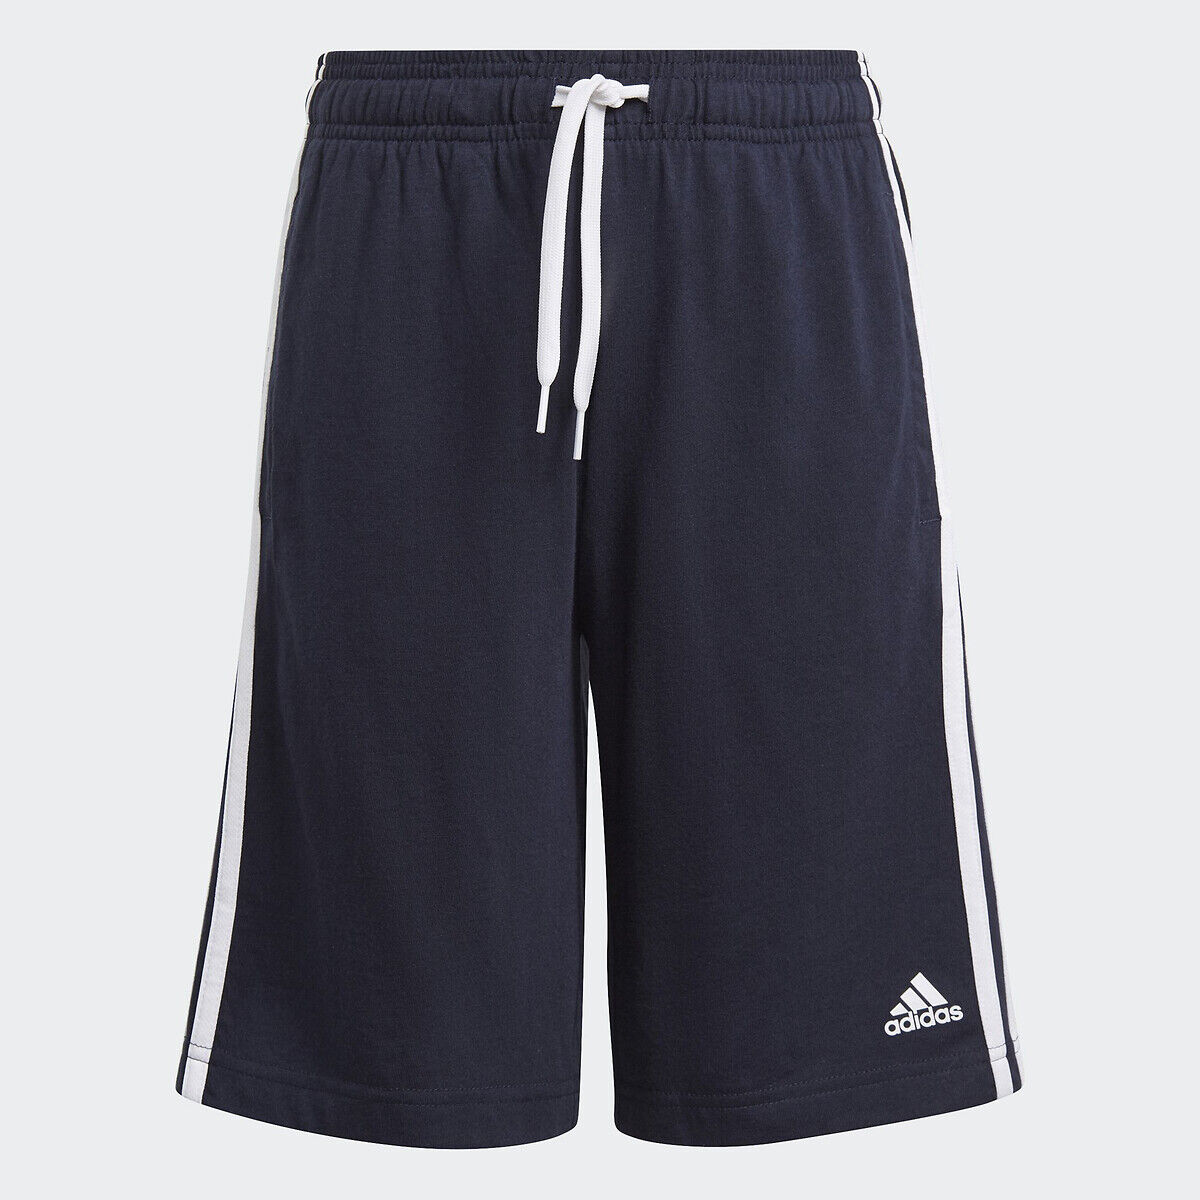 Adidas Shorts mit 3 Streifen, 5-16 Jahre BLAU